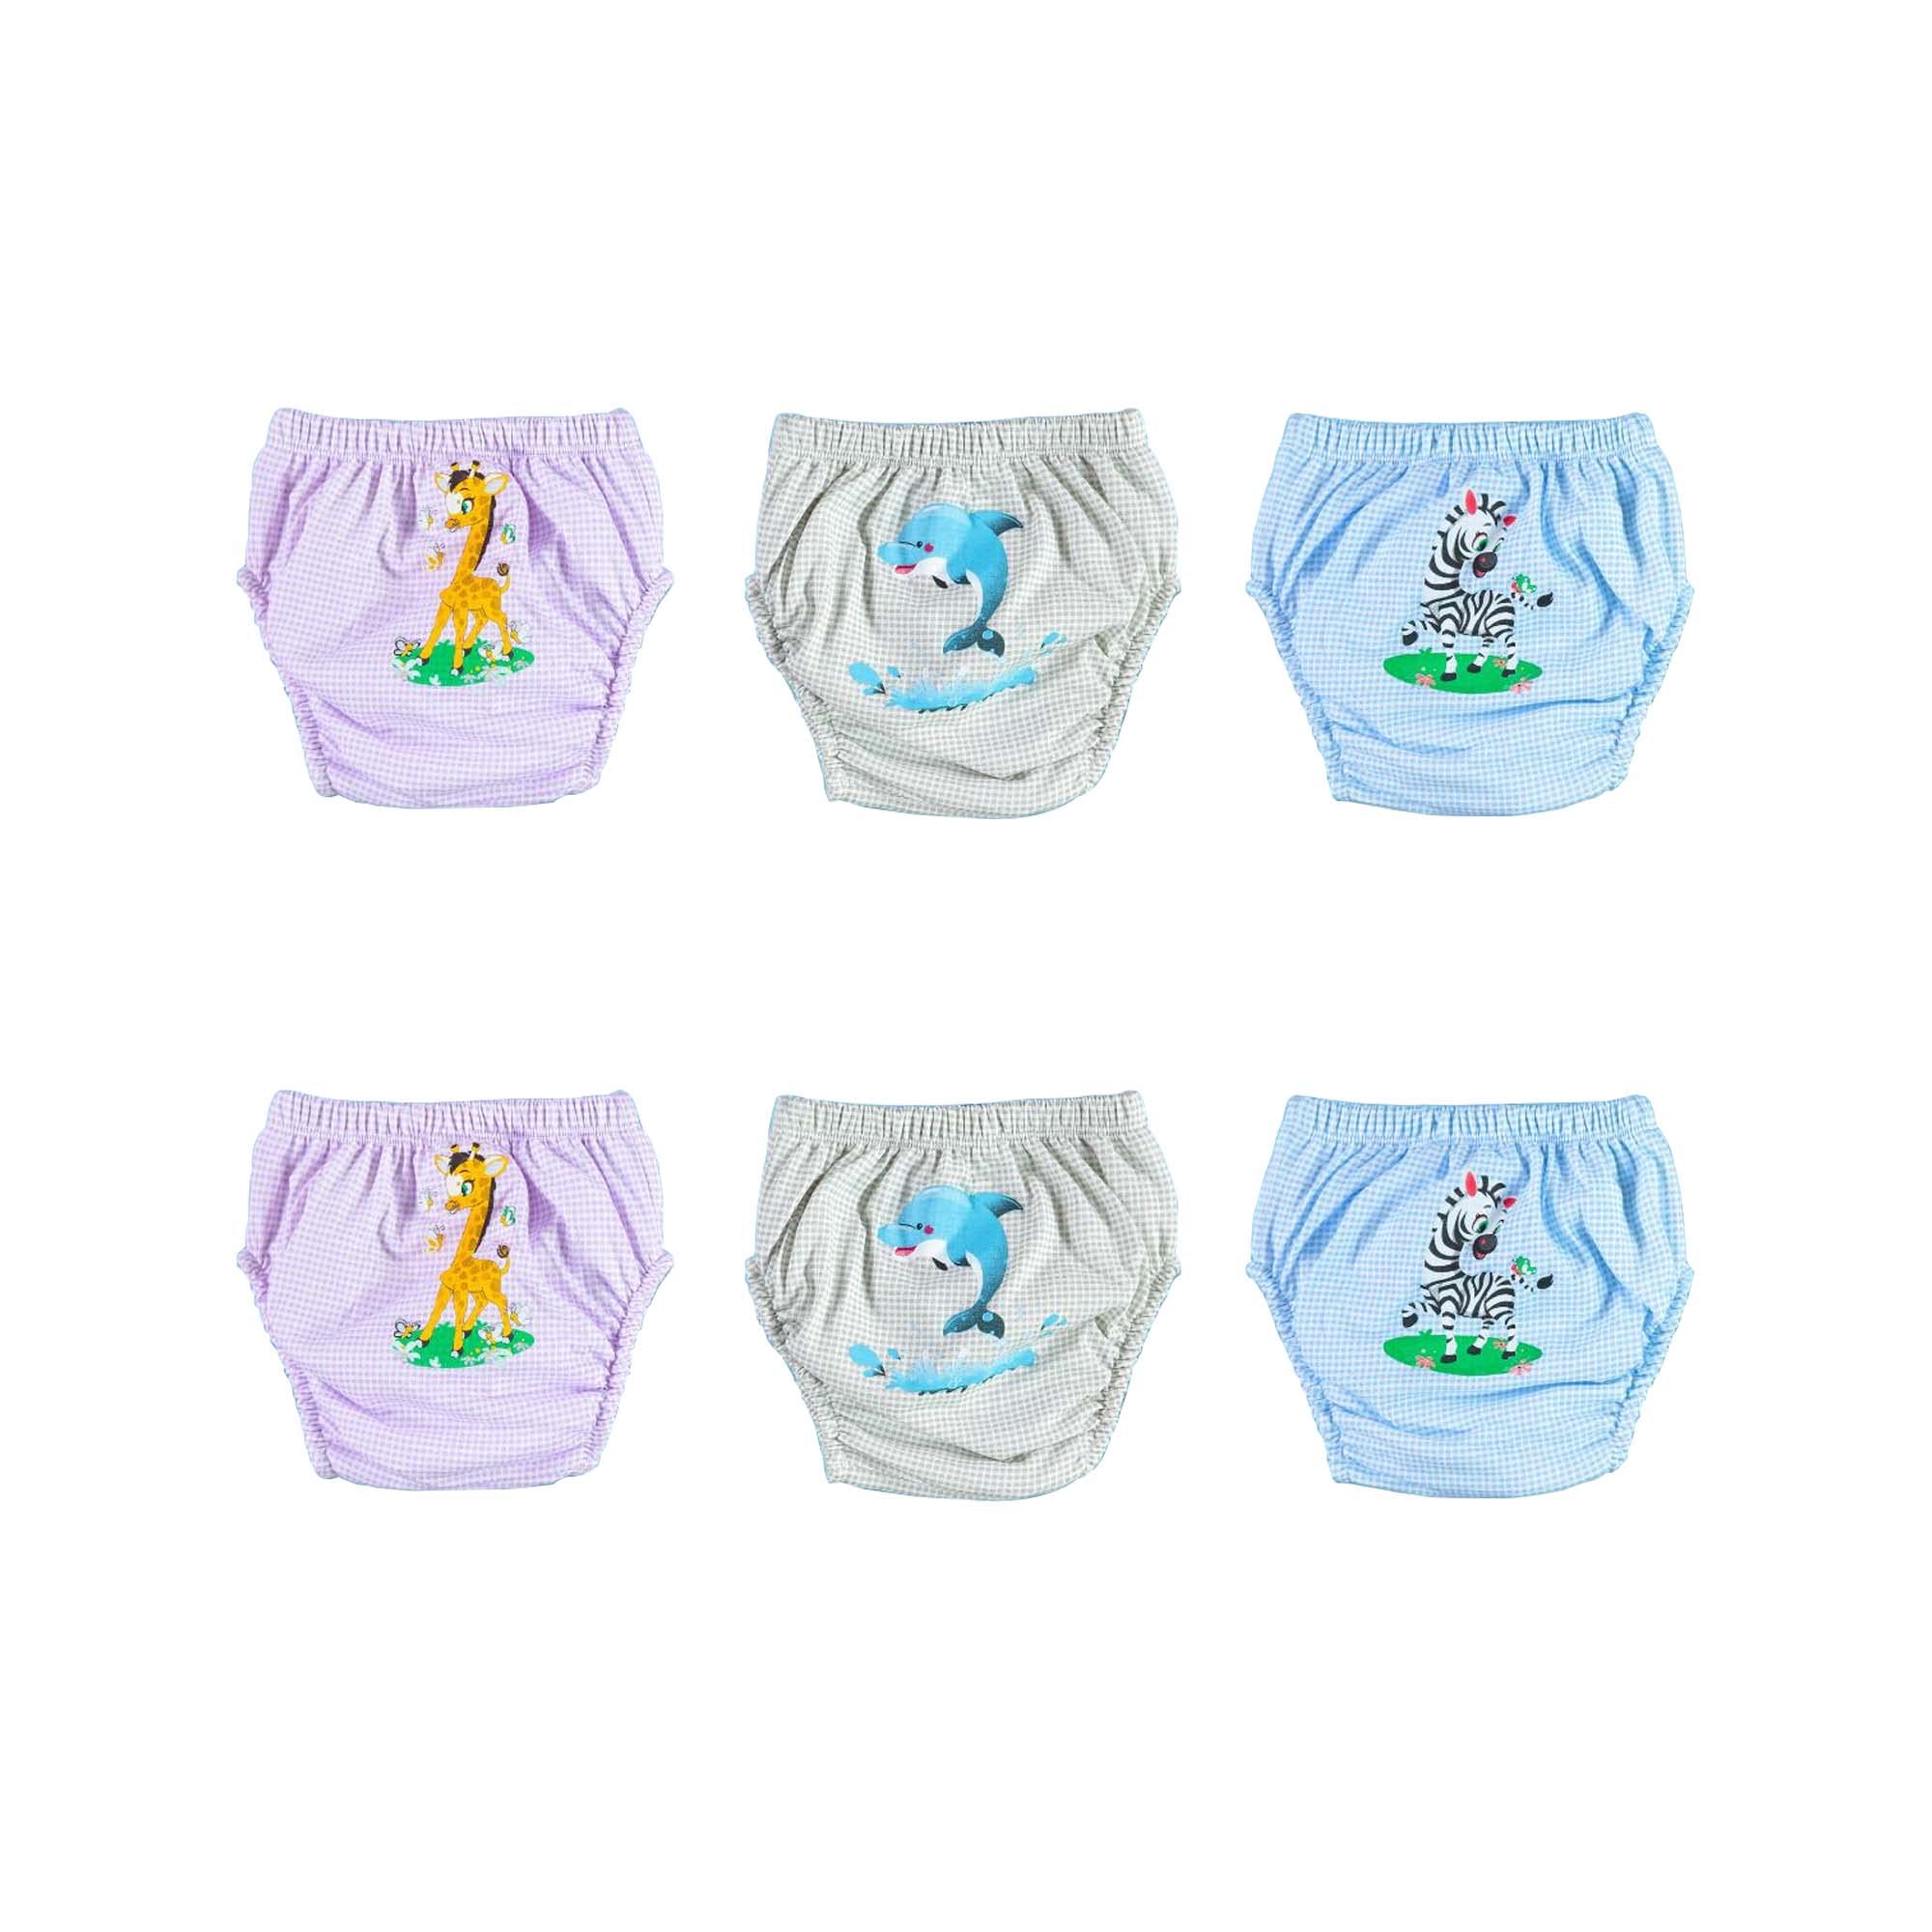 OZYOL Trainerhosen für Tröpfchentraining 6er Pack - Wiederverwendbare Kleinkinder Windelhosen Lernwindeln Trainerwindeln Baby Unterwäsche zum Sauberwerden Toilettentraining (Safari, 80)